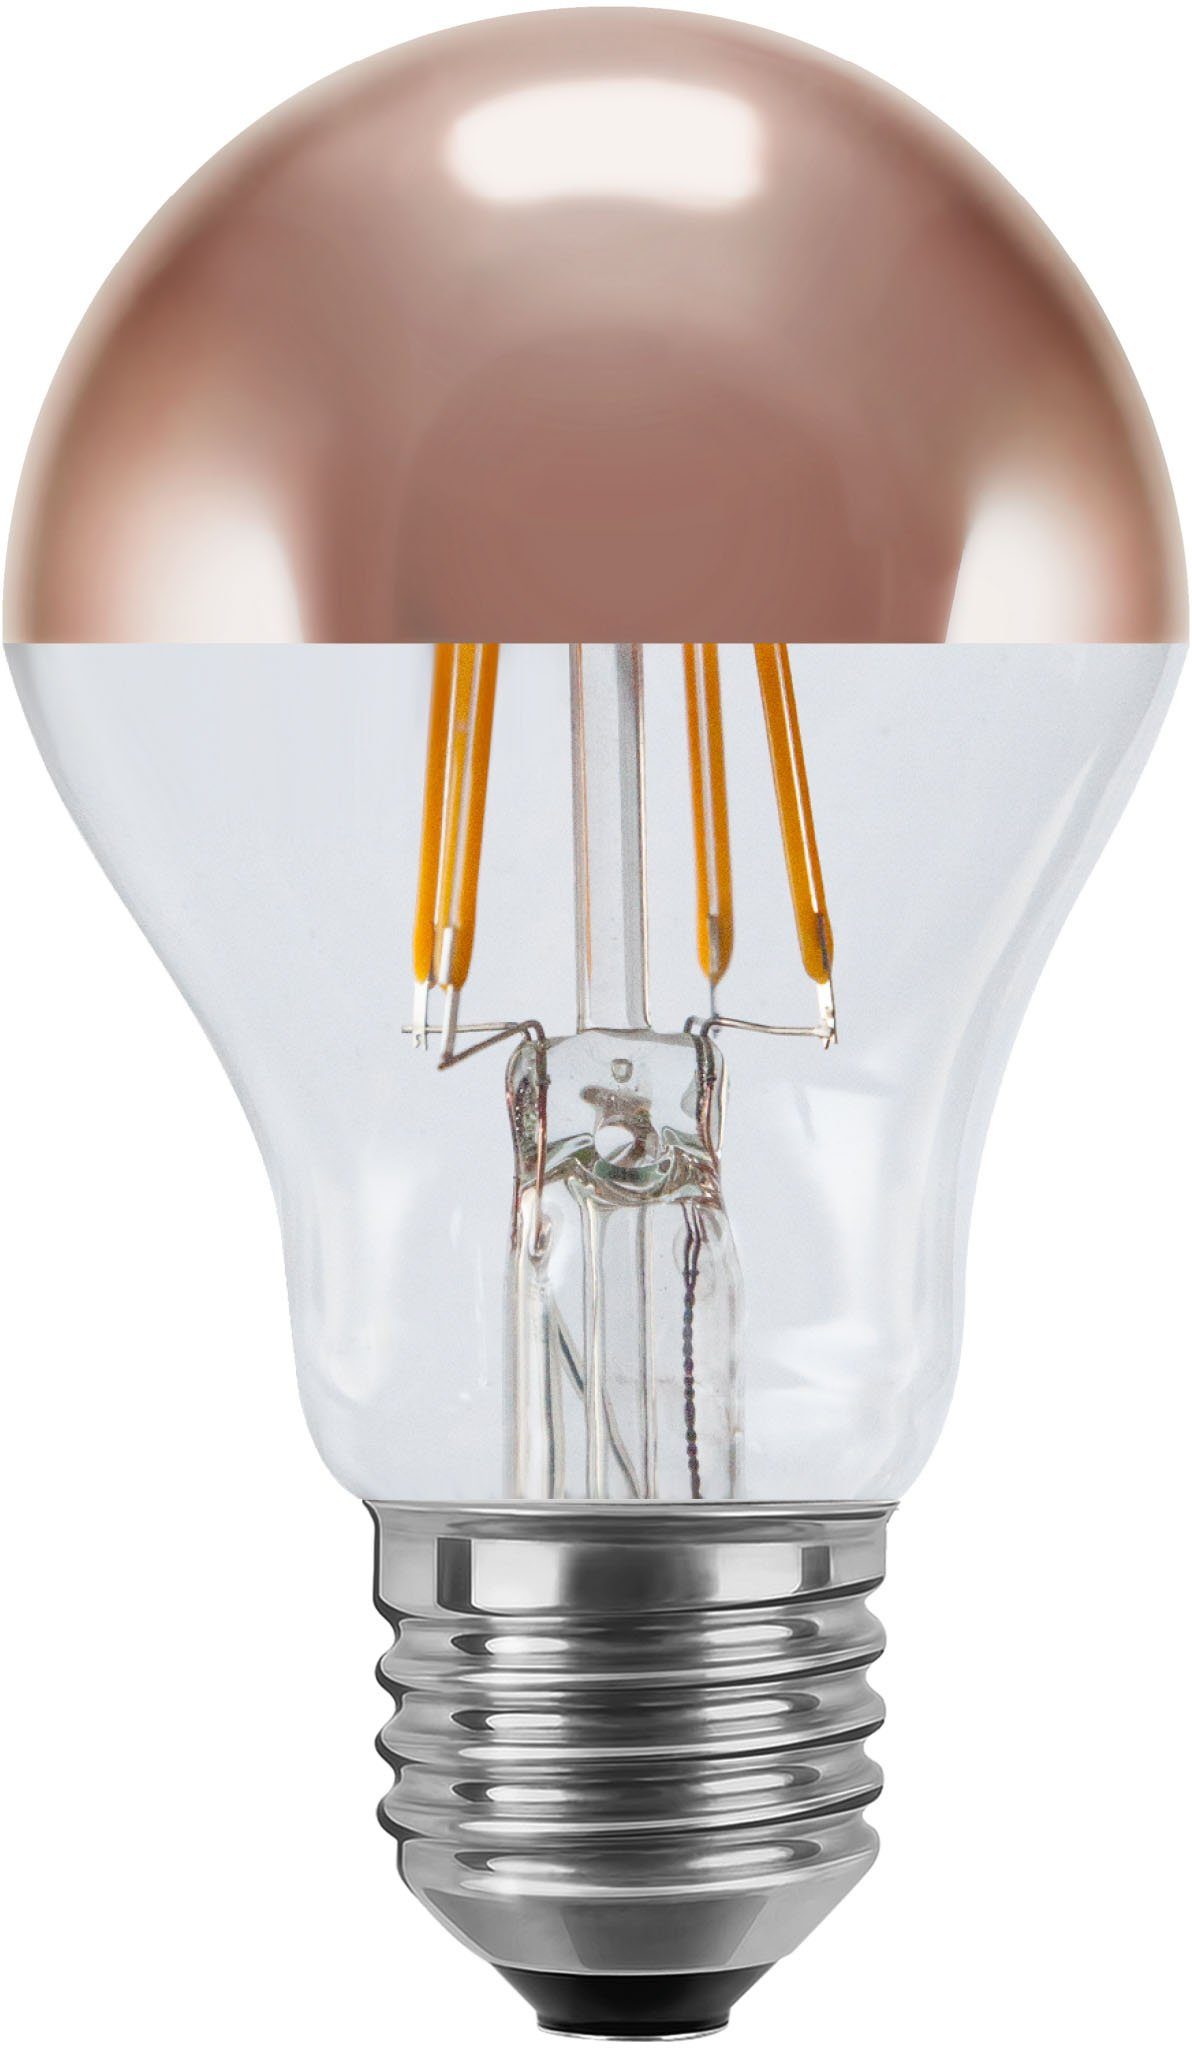 SEGULA LED-Leuchtmittel LED Glühlampe Spiegelkopf Kupfer, E27, Warmweiß, dimmbar, E27, Glühlampe Spiegelkopf Kupfer, 2700K